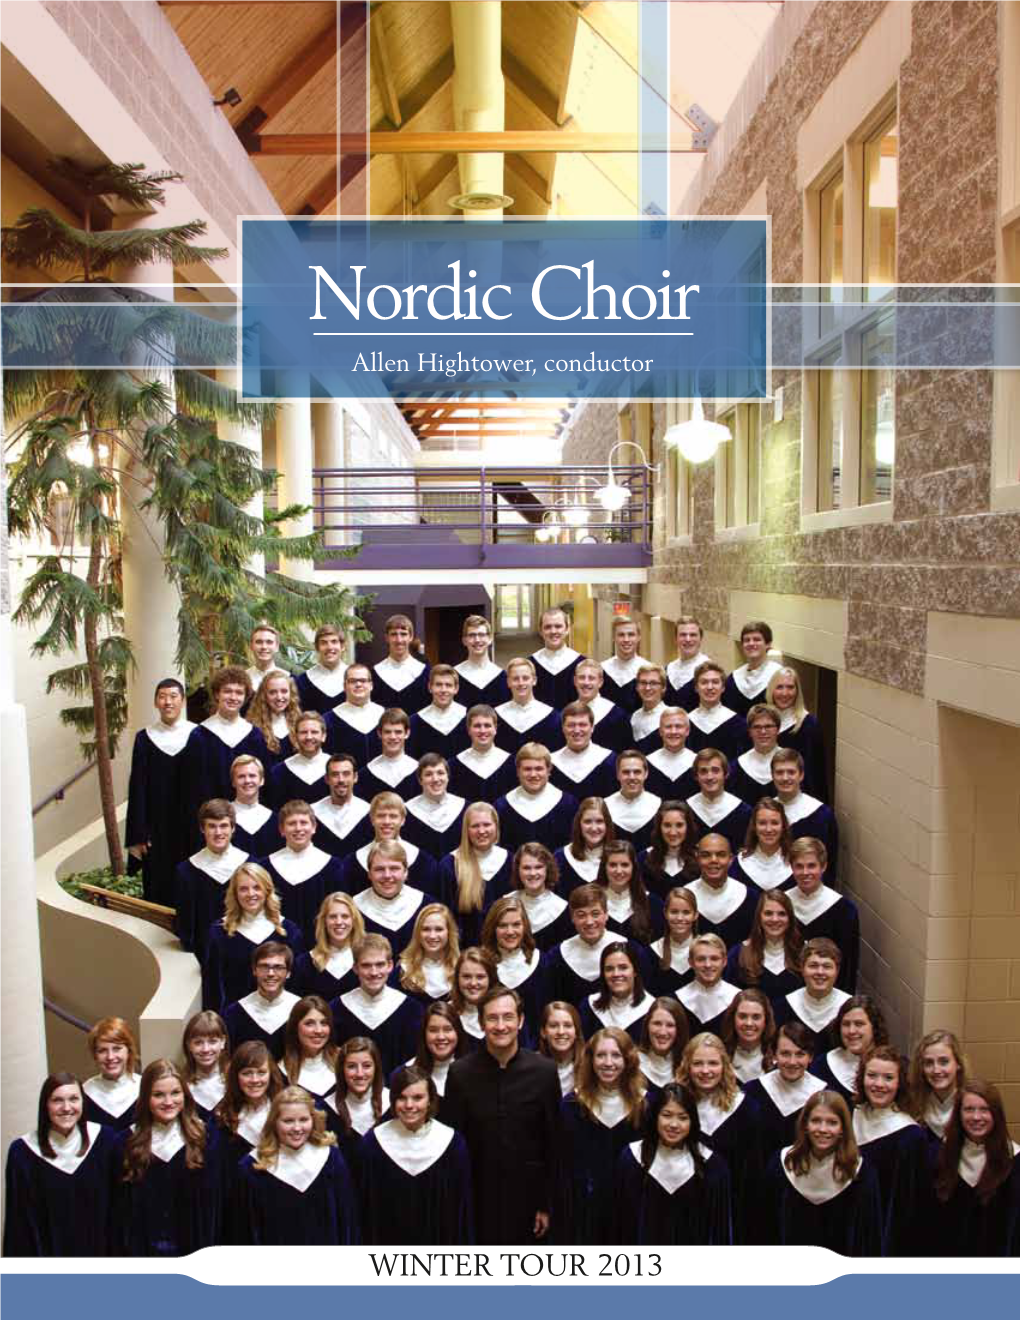 Nordic Choir Allen Hightower, Conductor